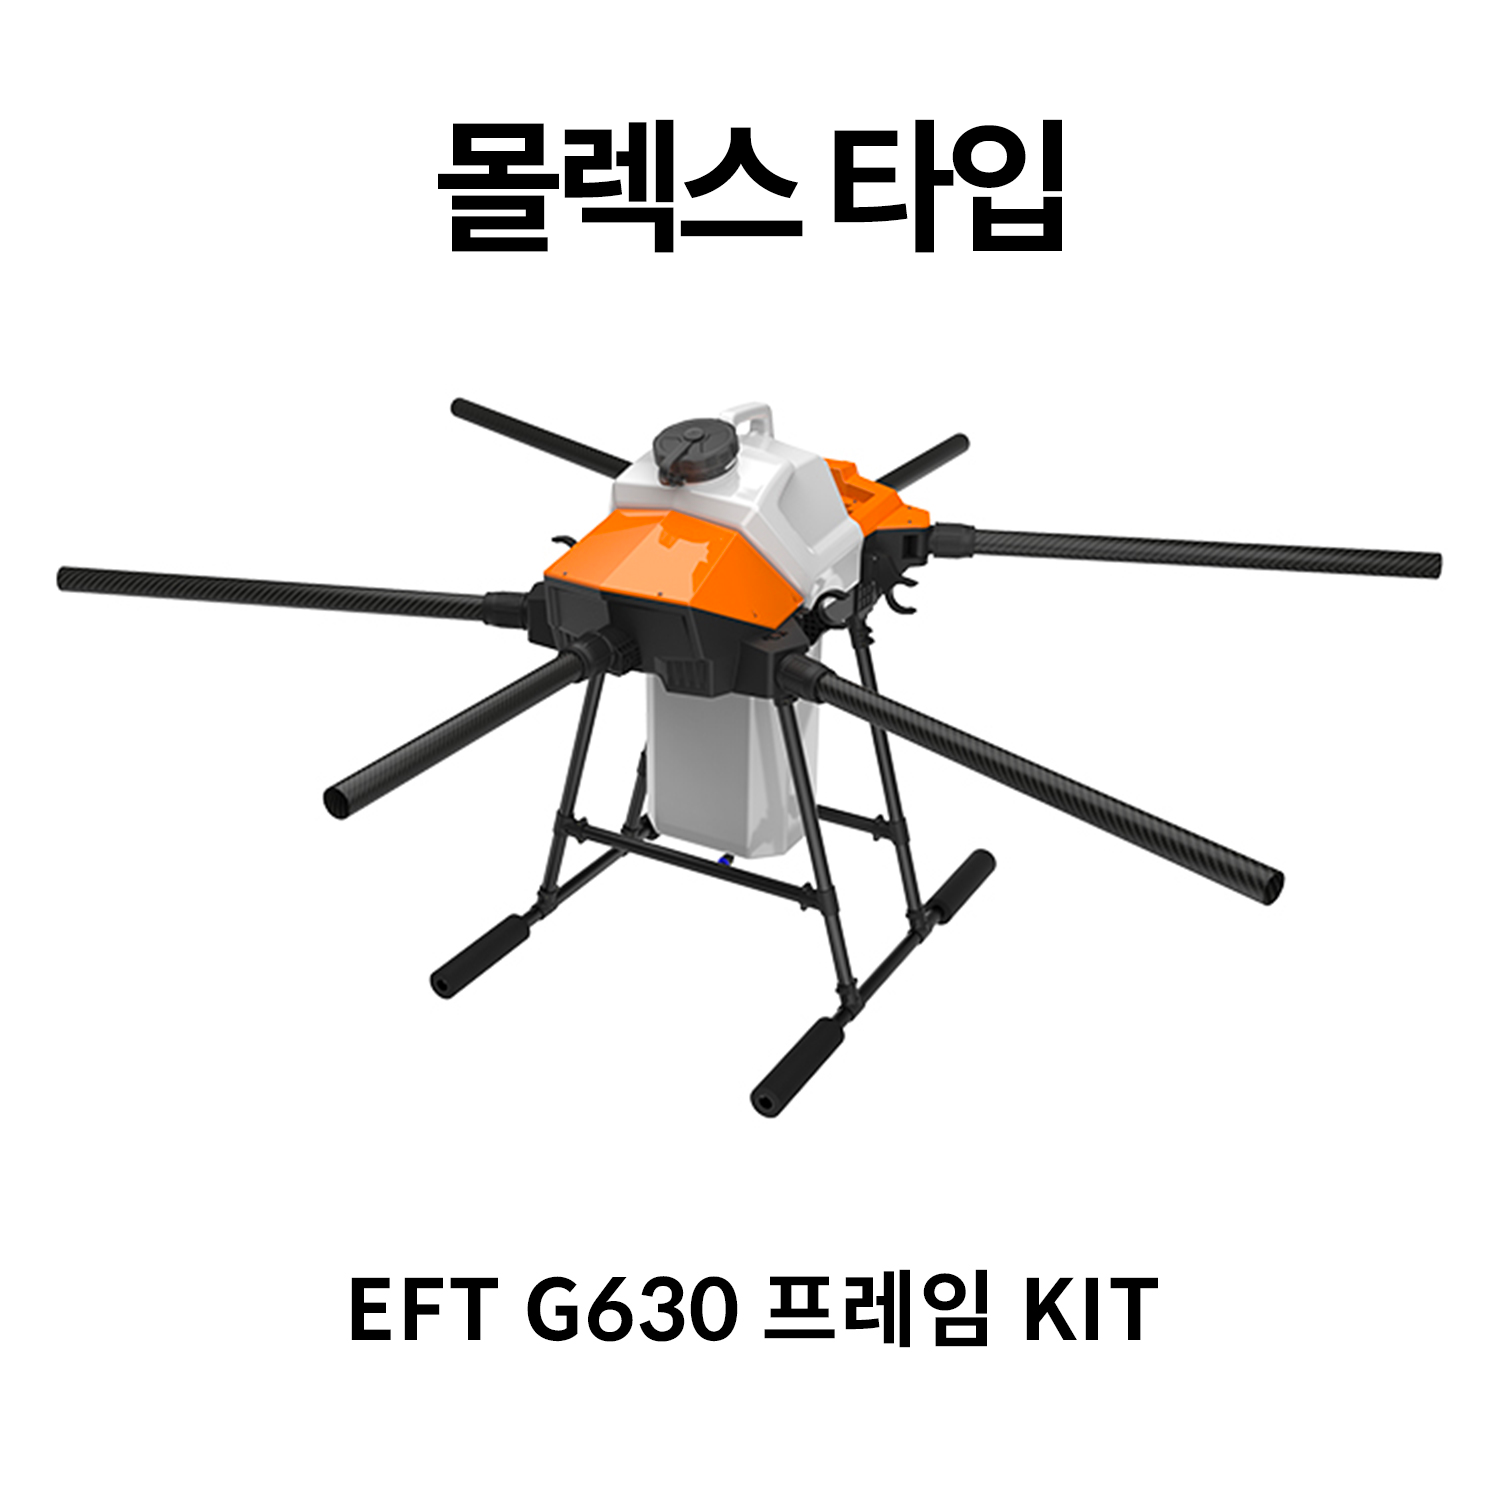 [당일출고]EFT G630 몰렉스 타입 프레임 KIT 농업 방제드론 - 스마트 3.0 배터리 전용 프레임 헬셀